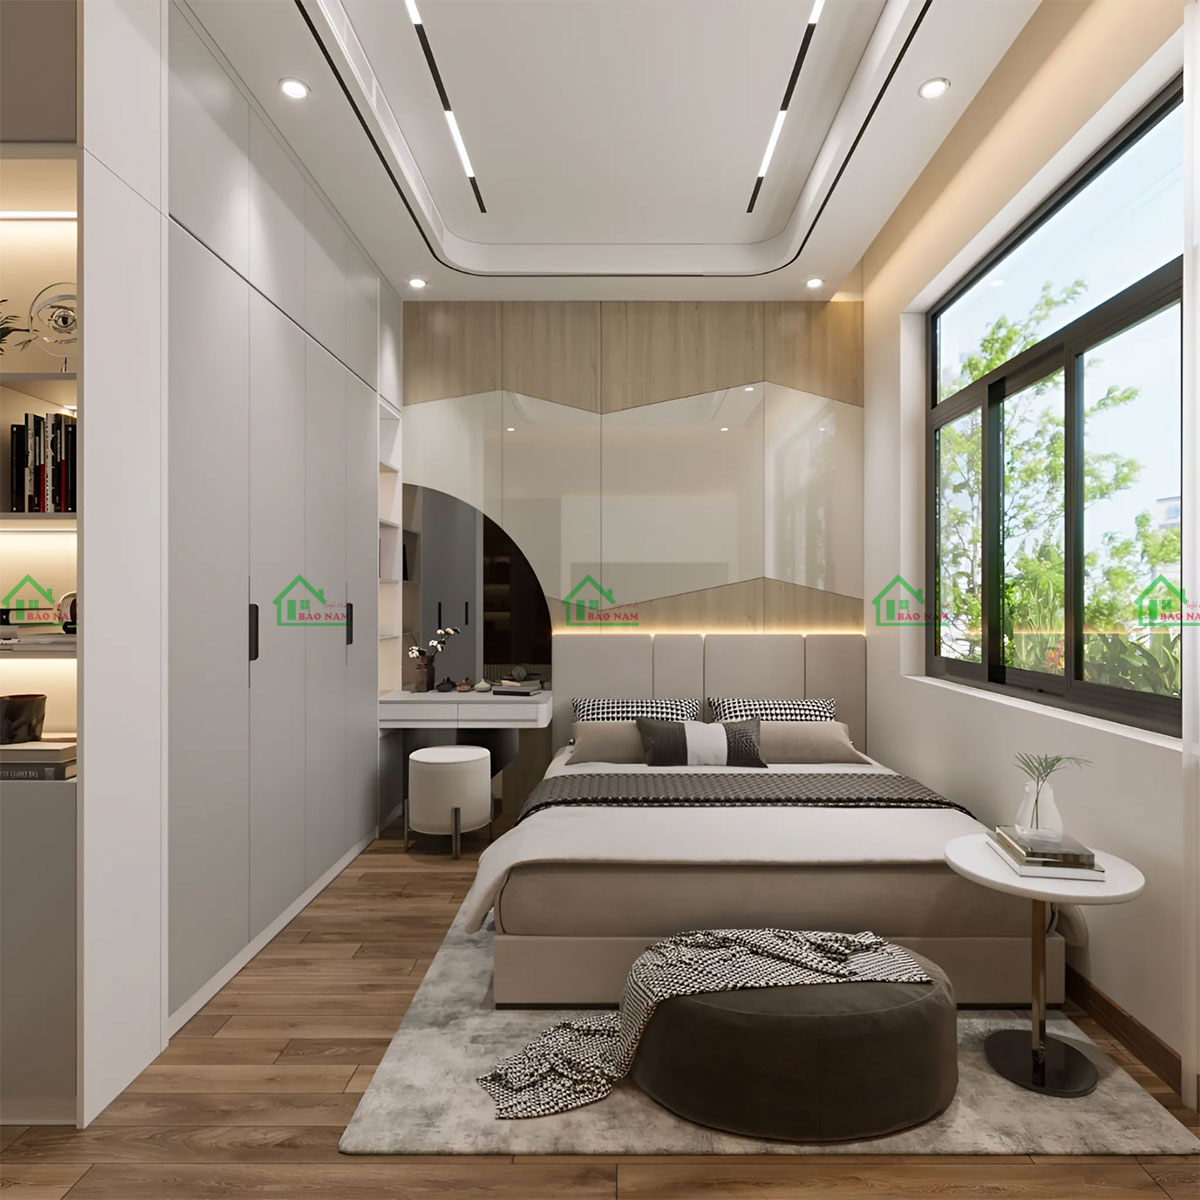 Thiết kế phòng ngủ logic mang đến không gian ấm cúng, thoải mái